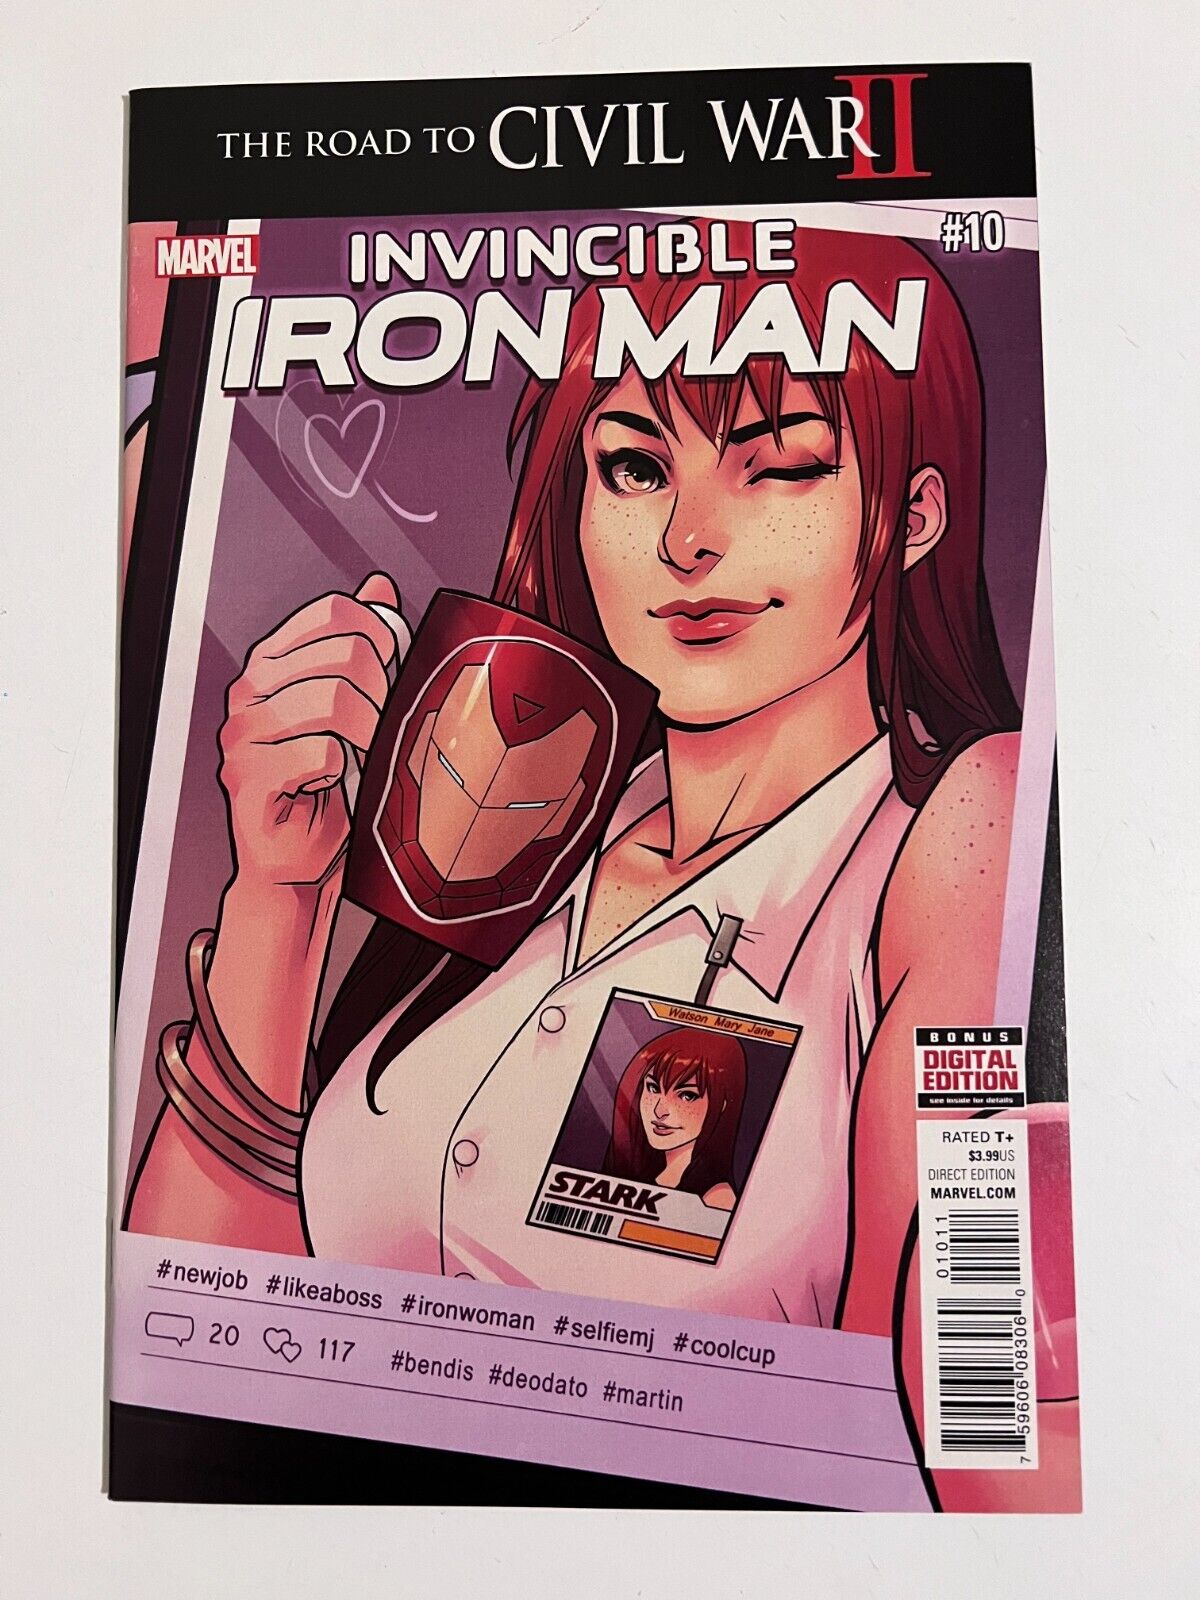 Invincible Iron Man #10 Vol 3